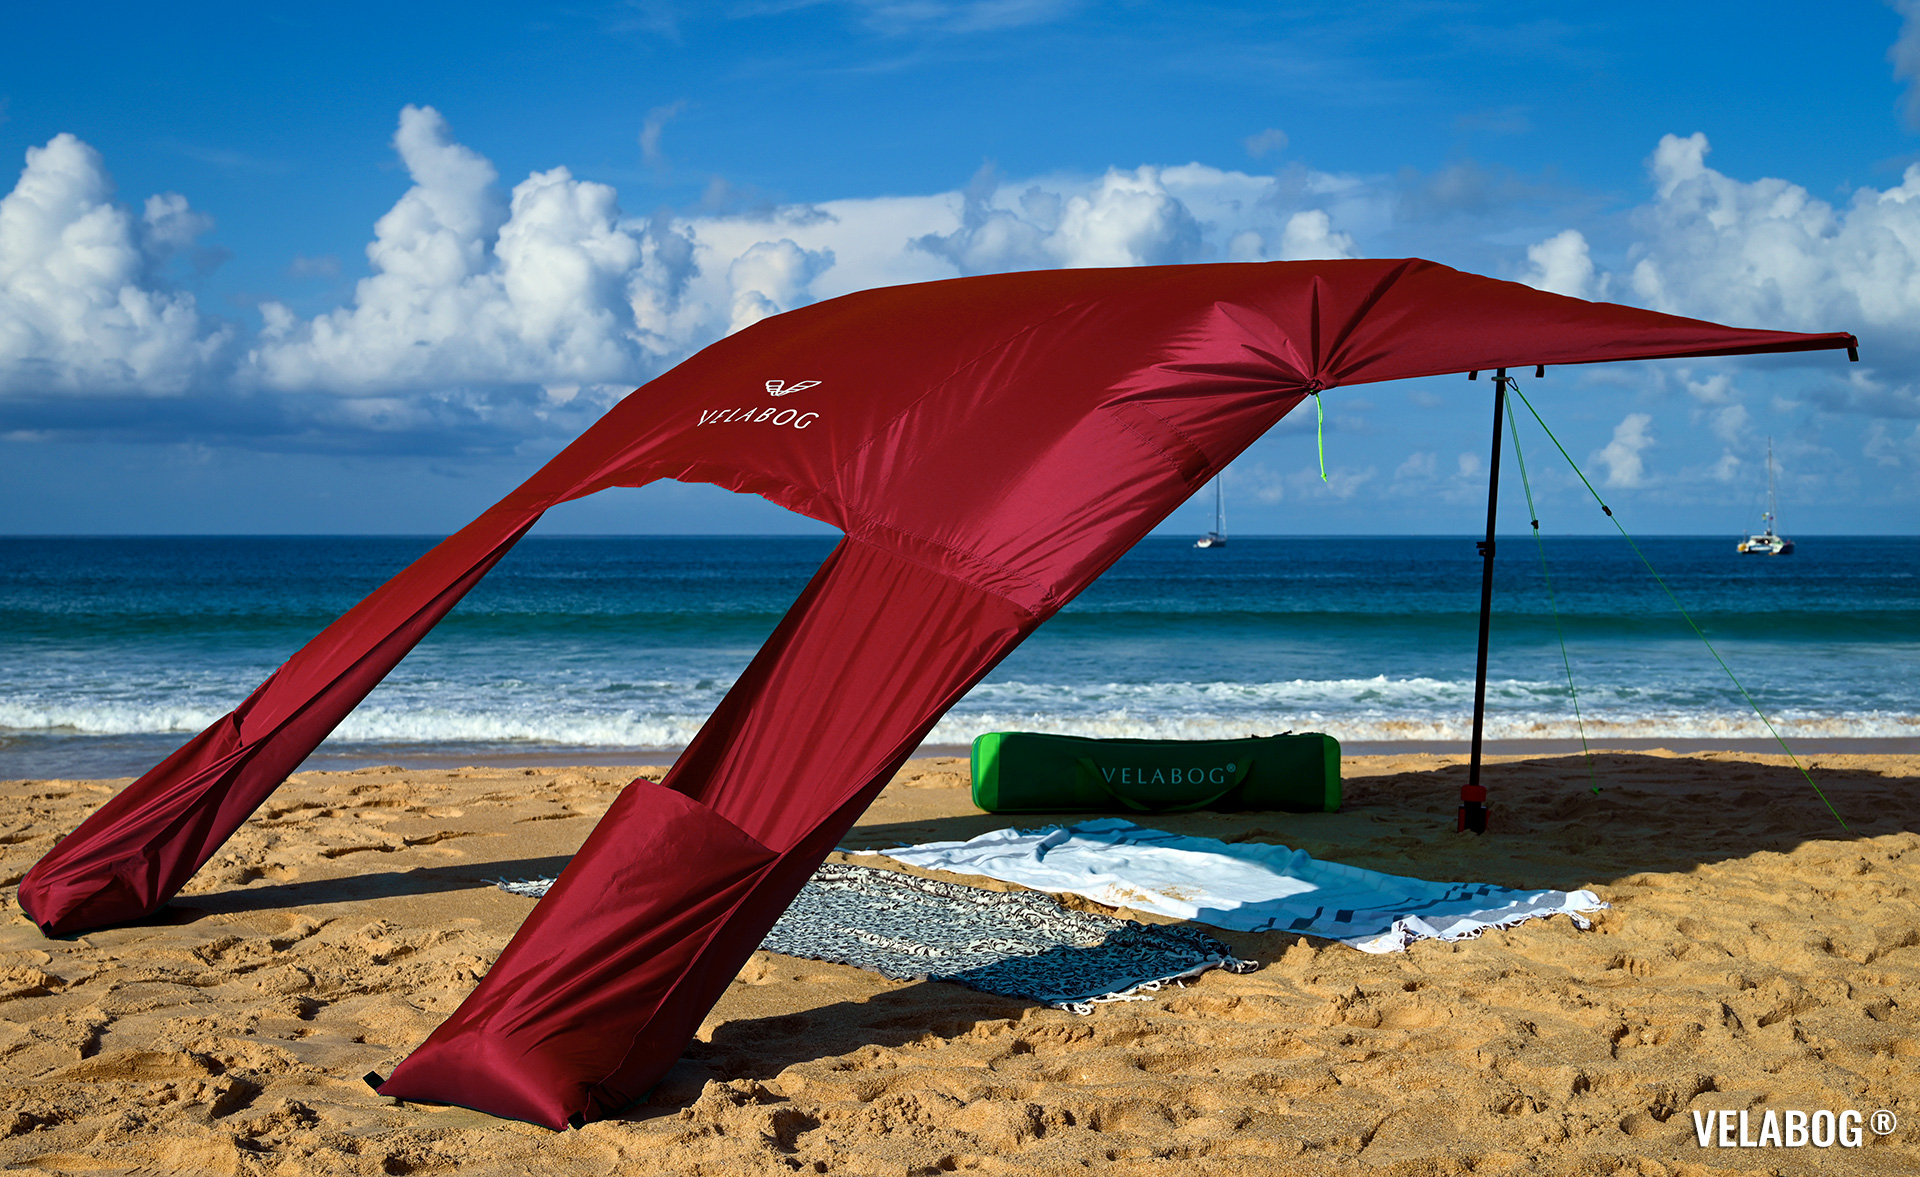 Strand Sonnensegel Strandzelt Velabog Breeze, rot. Bester Sonnenschutz Strand. Stylisch, luftig, schattig. Test Strand Sonnensegel Aufbauoption beim leichten bis starken Wind. Windstabil. Ansicht von schräg hinten.